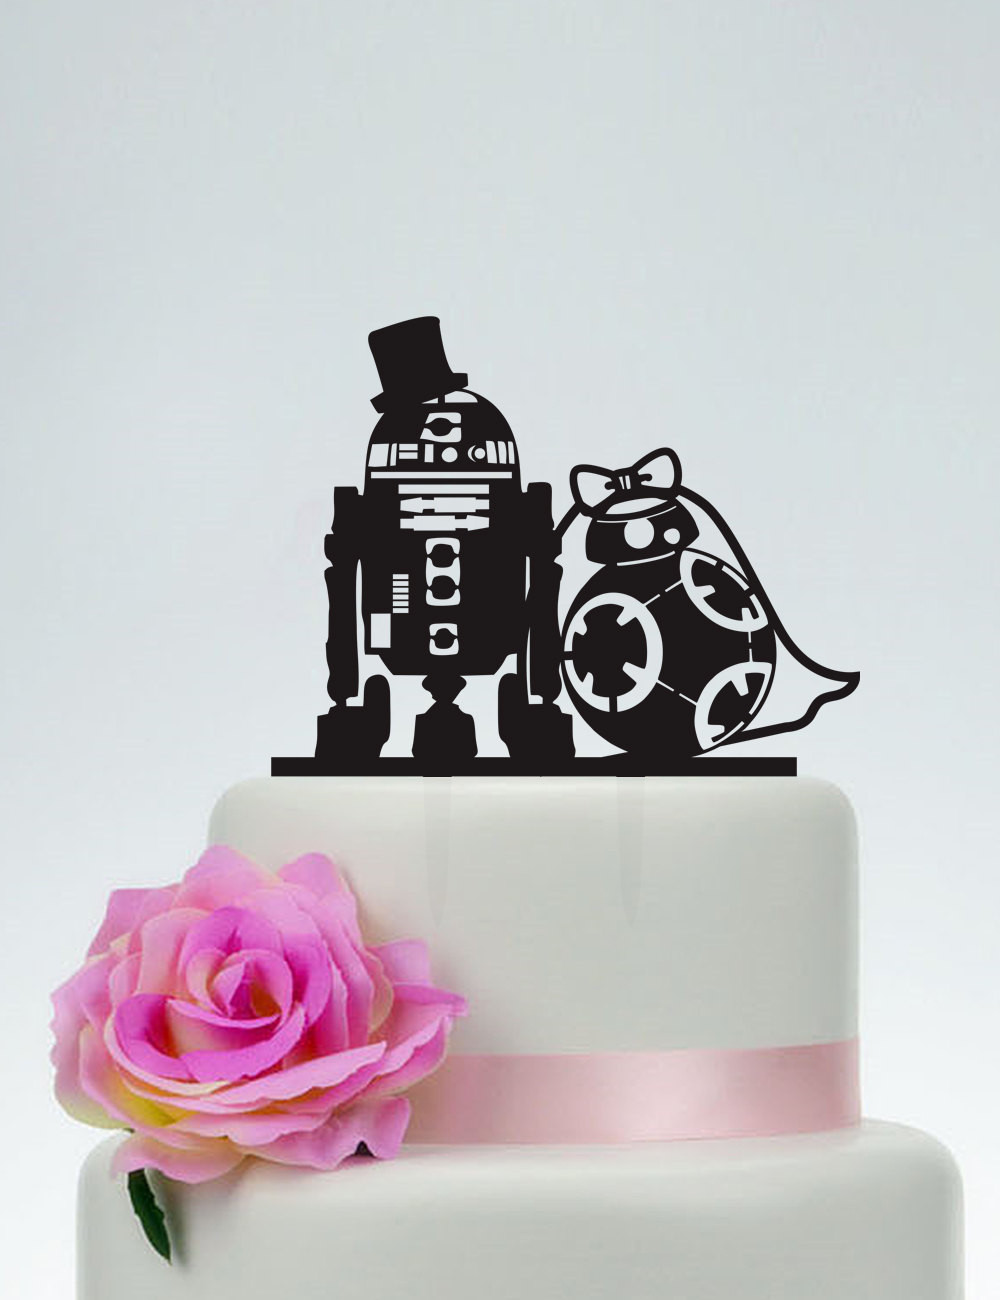 Star Wars Wedding Cake Topper
 Wedding Cake TopperStar Wars Cake TopperR2D2 & Bb8 cake